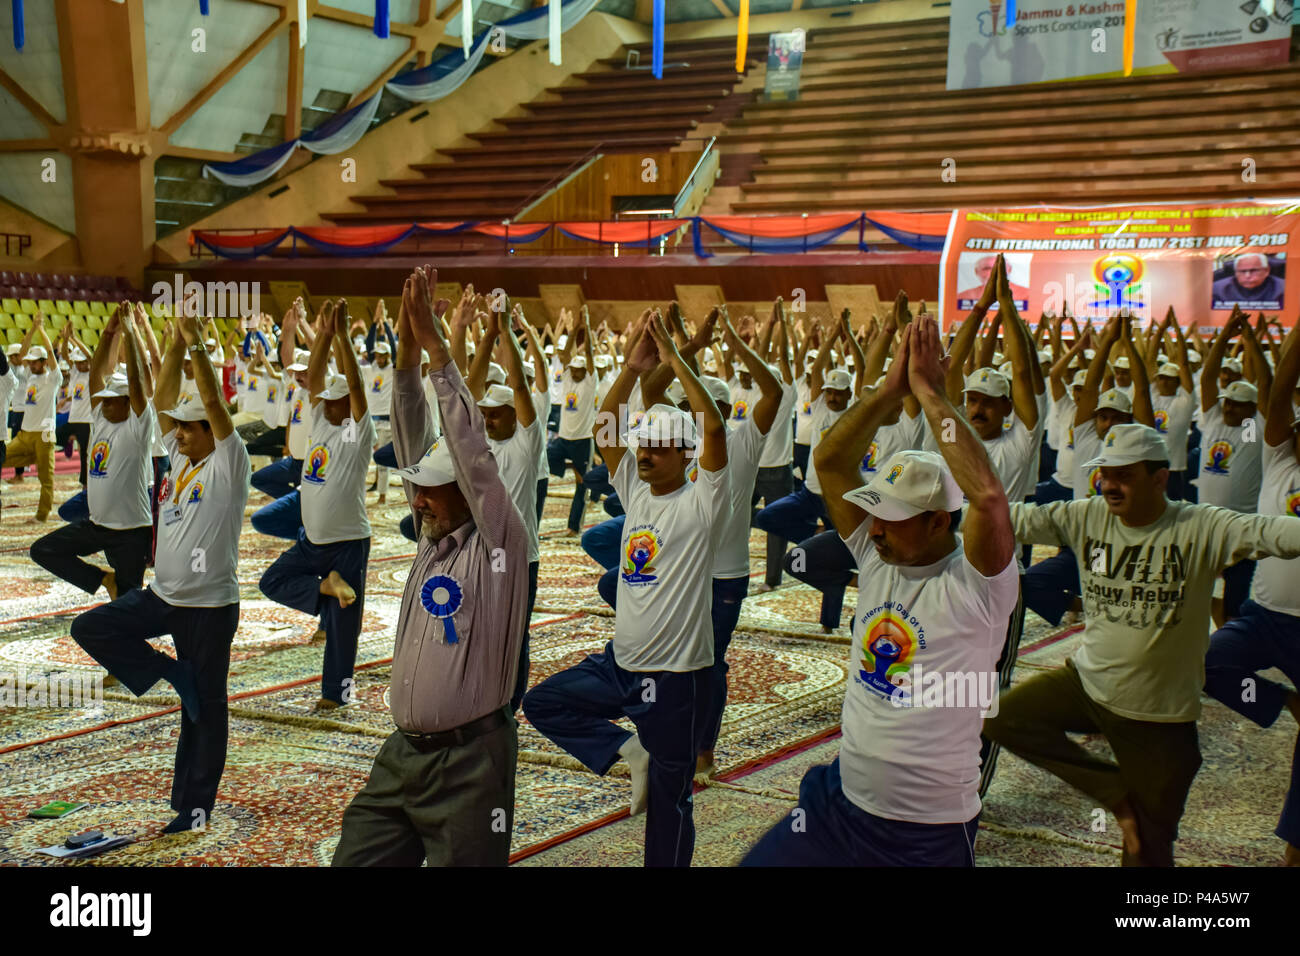 Menschen üben Yoga in Anwesenheit der Govenor von Jammu und Kaschmir N.N. Vohra auf den Internationalen Tag für Yoga in Indore Stadion Srinagar Sommer Hauptstadt des indischen Teil Kaschmirs verwaltet. Yoga wird geglaubt, eine physische, mentale und spirituelle Praxis werden größtenteils nach Indien zugeschrieben. Internationale Yoga Tag ist am 21. Juni jeden Jahres ab 4 Jahren gefeiert und es war im Jahr 2015 einstimmig von der Generalversammlung der Vereinten Nationen erklärt. Stockfoto